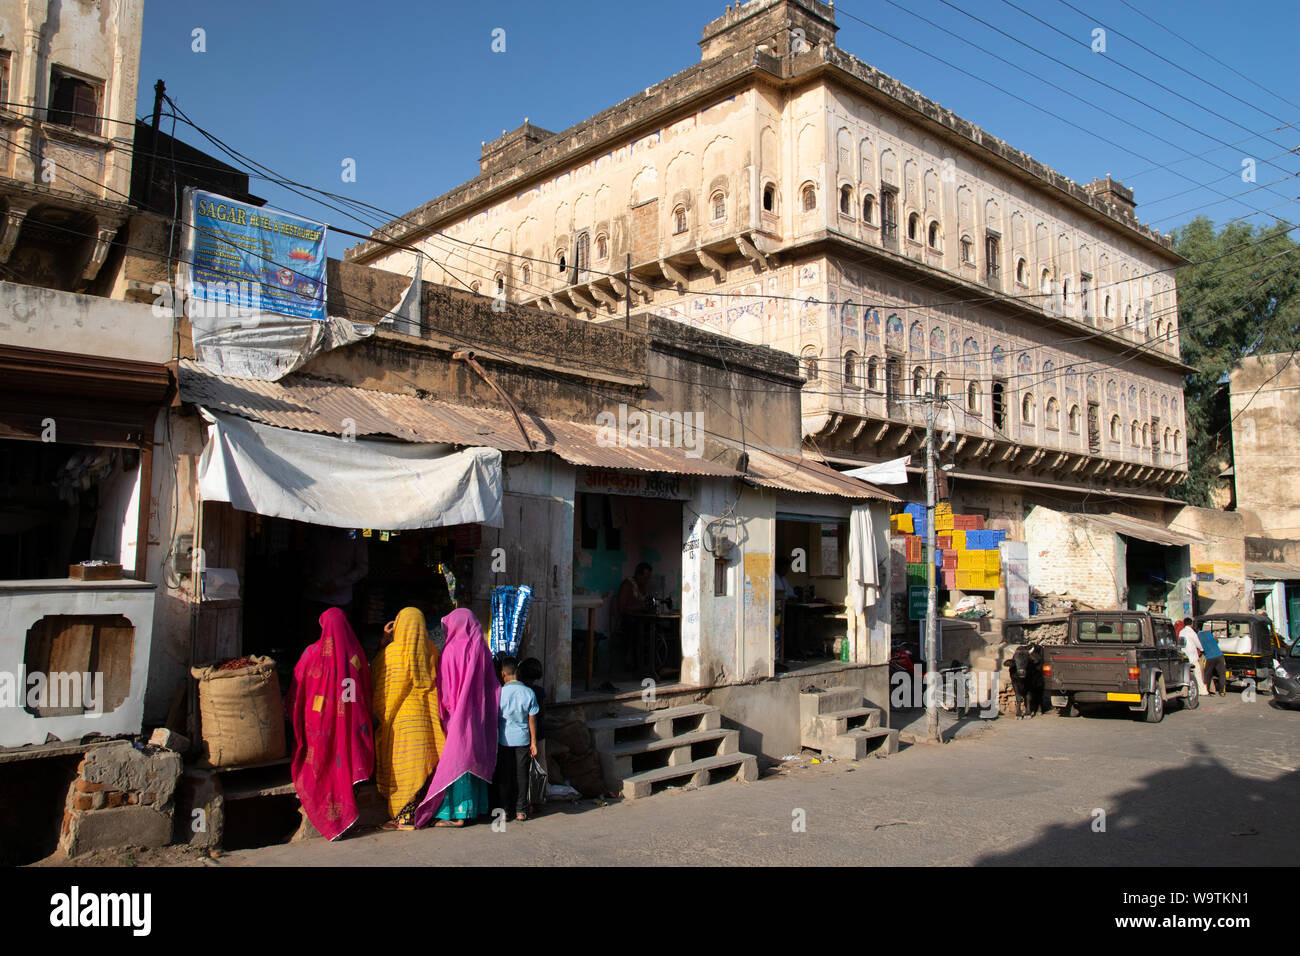 Eine Straße mit einem alten Haveli, einer Schneiderei und drei Frauen in bunten Saris beim Einkaufen Stock Photo